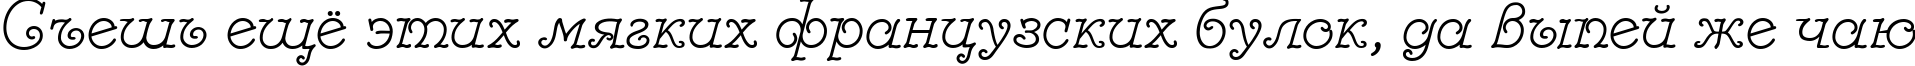 Пример написания шрифтом Modestina текста на русском